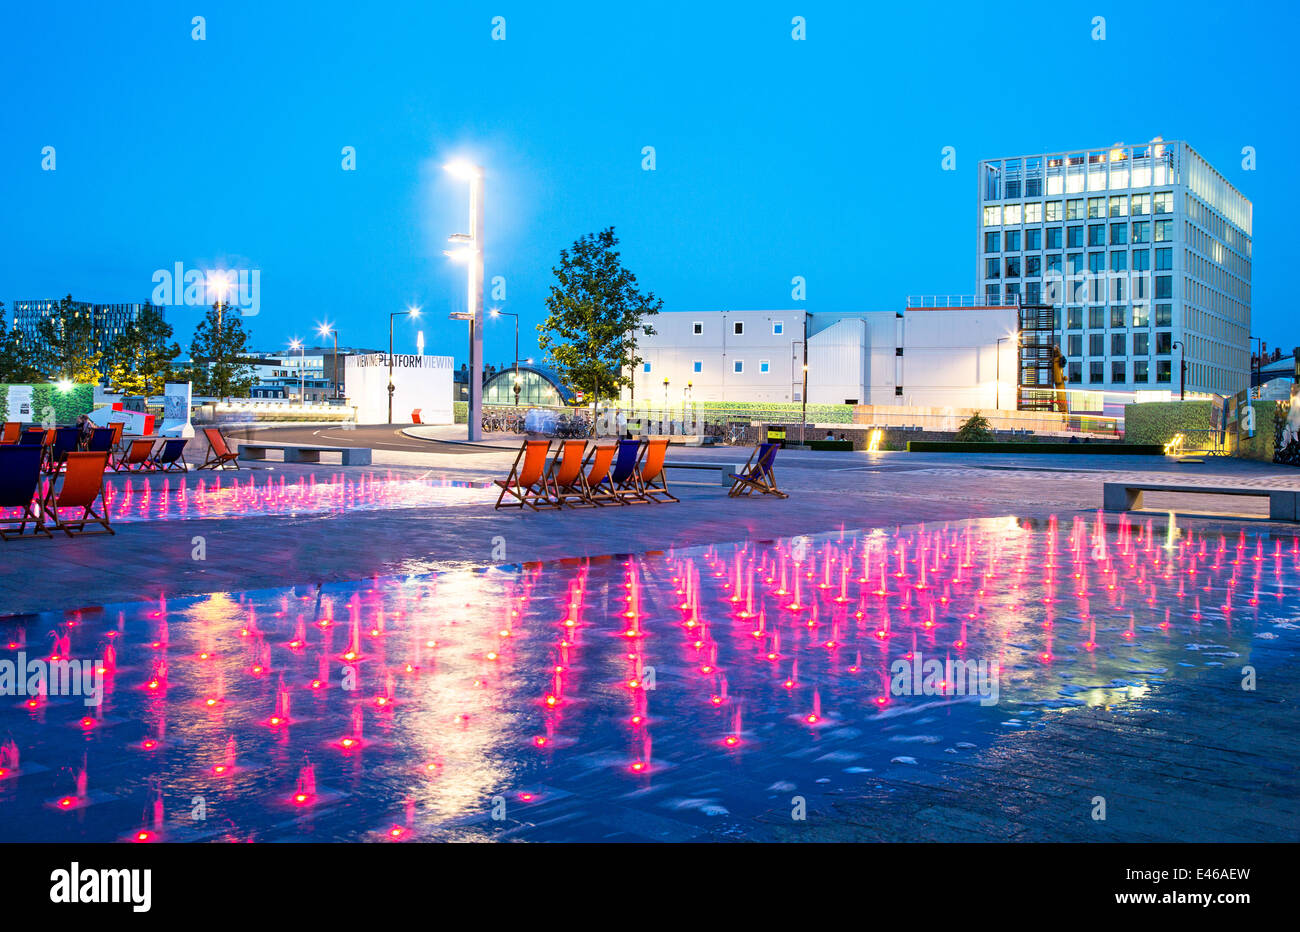 Fontana di colorate luci di notte granaio Square Kings Cross London REGNO UNITO Foto Stock